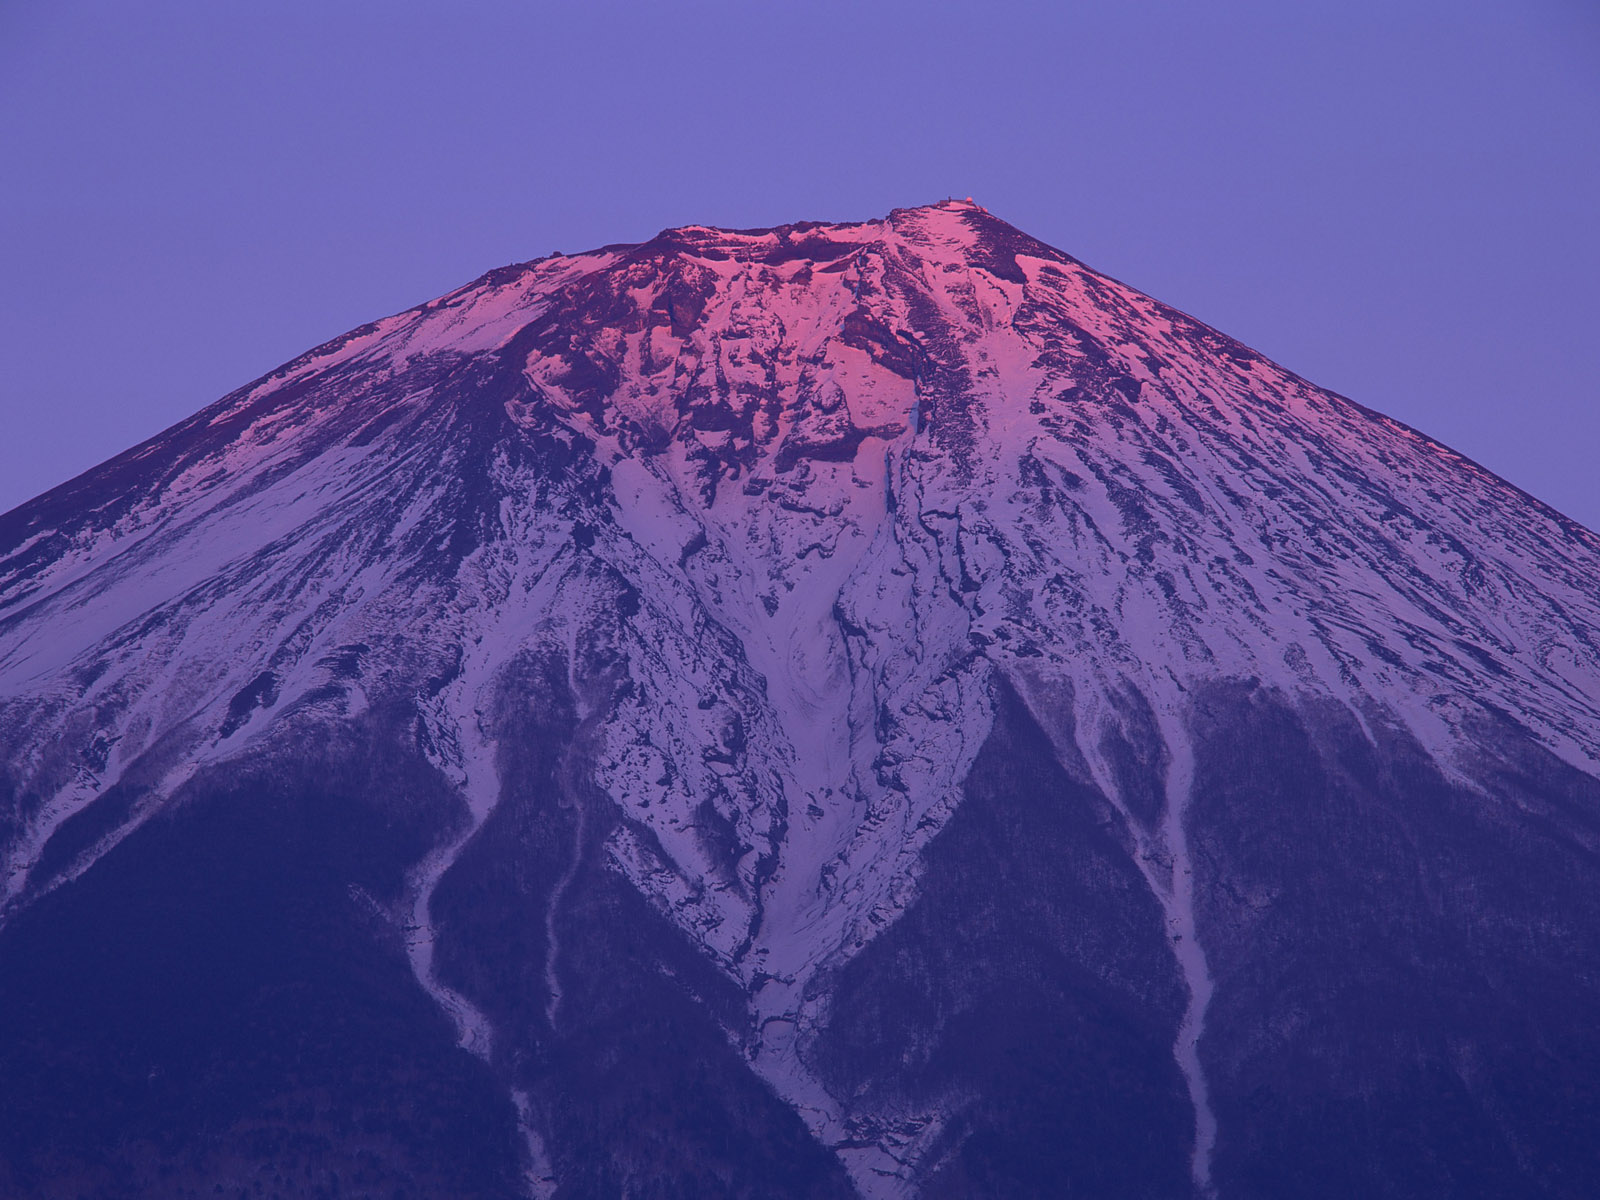 壁纸1600x1200富士山风光壁纸 富士山风光壁纸 富士山风光图片 富士山风光素材 风景壁纸 风景图库 风景图片素材桌面壁纸